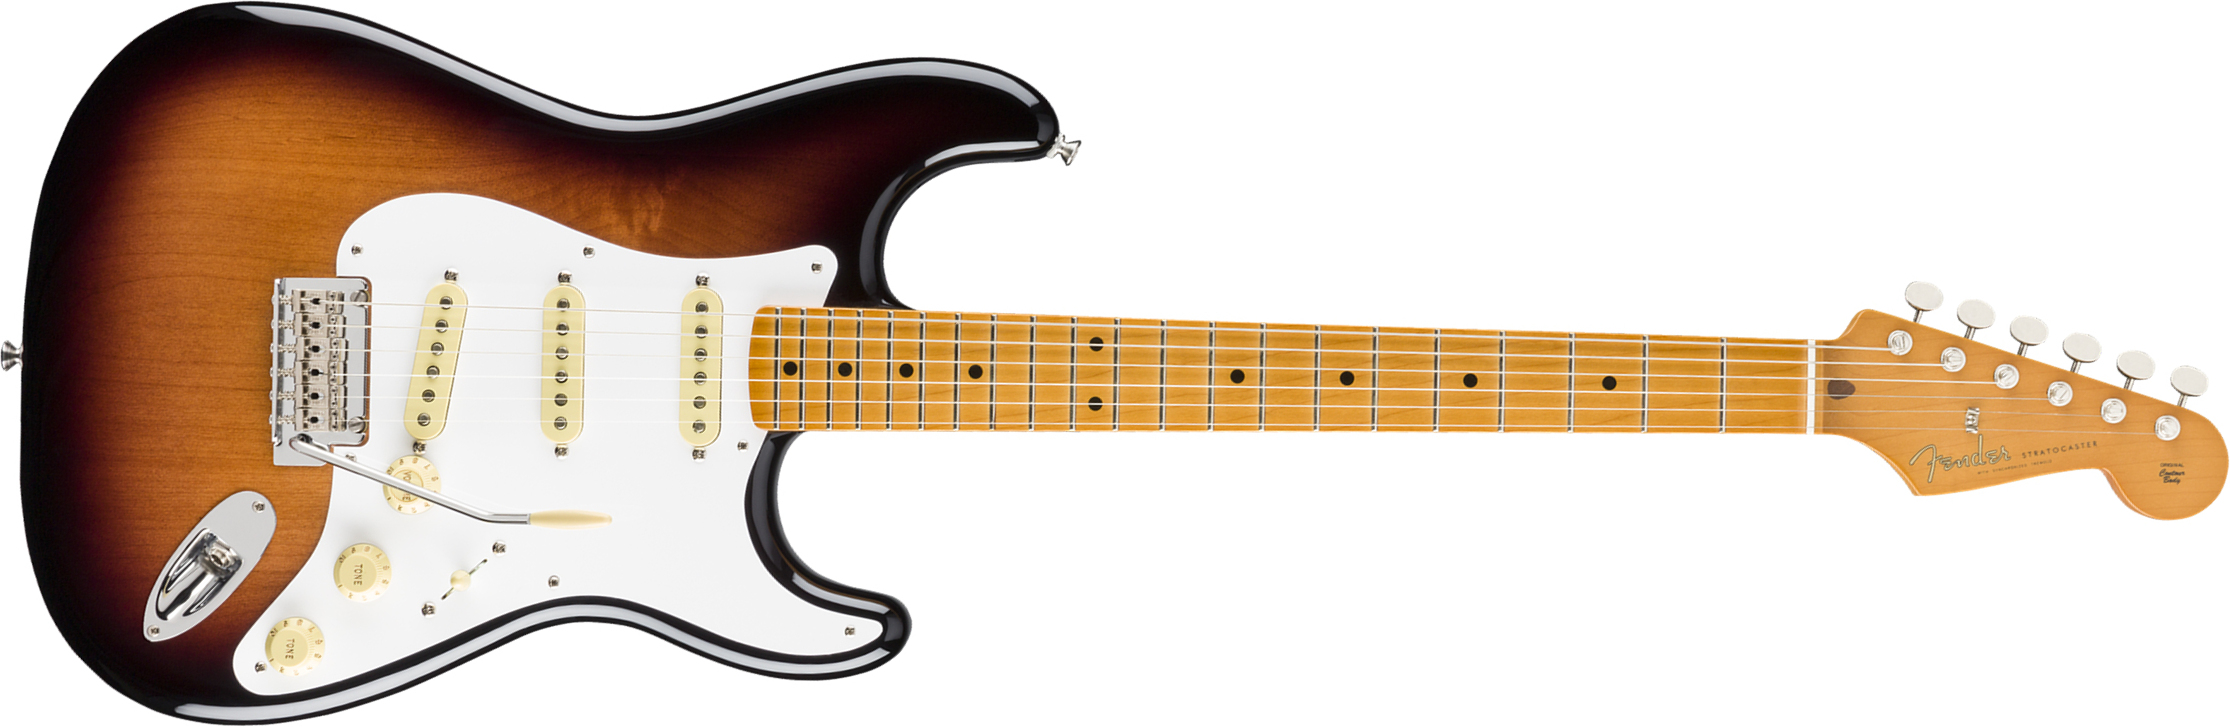 Fender Strat 50s Vintera Modified Mex Mn - 2-color Sunburst - Str shape electric guitar - Main picture